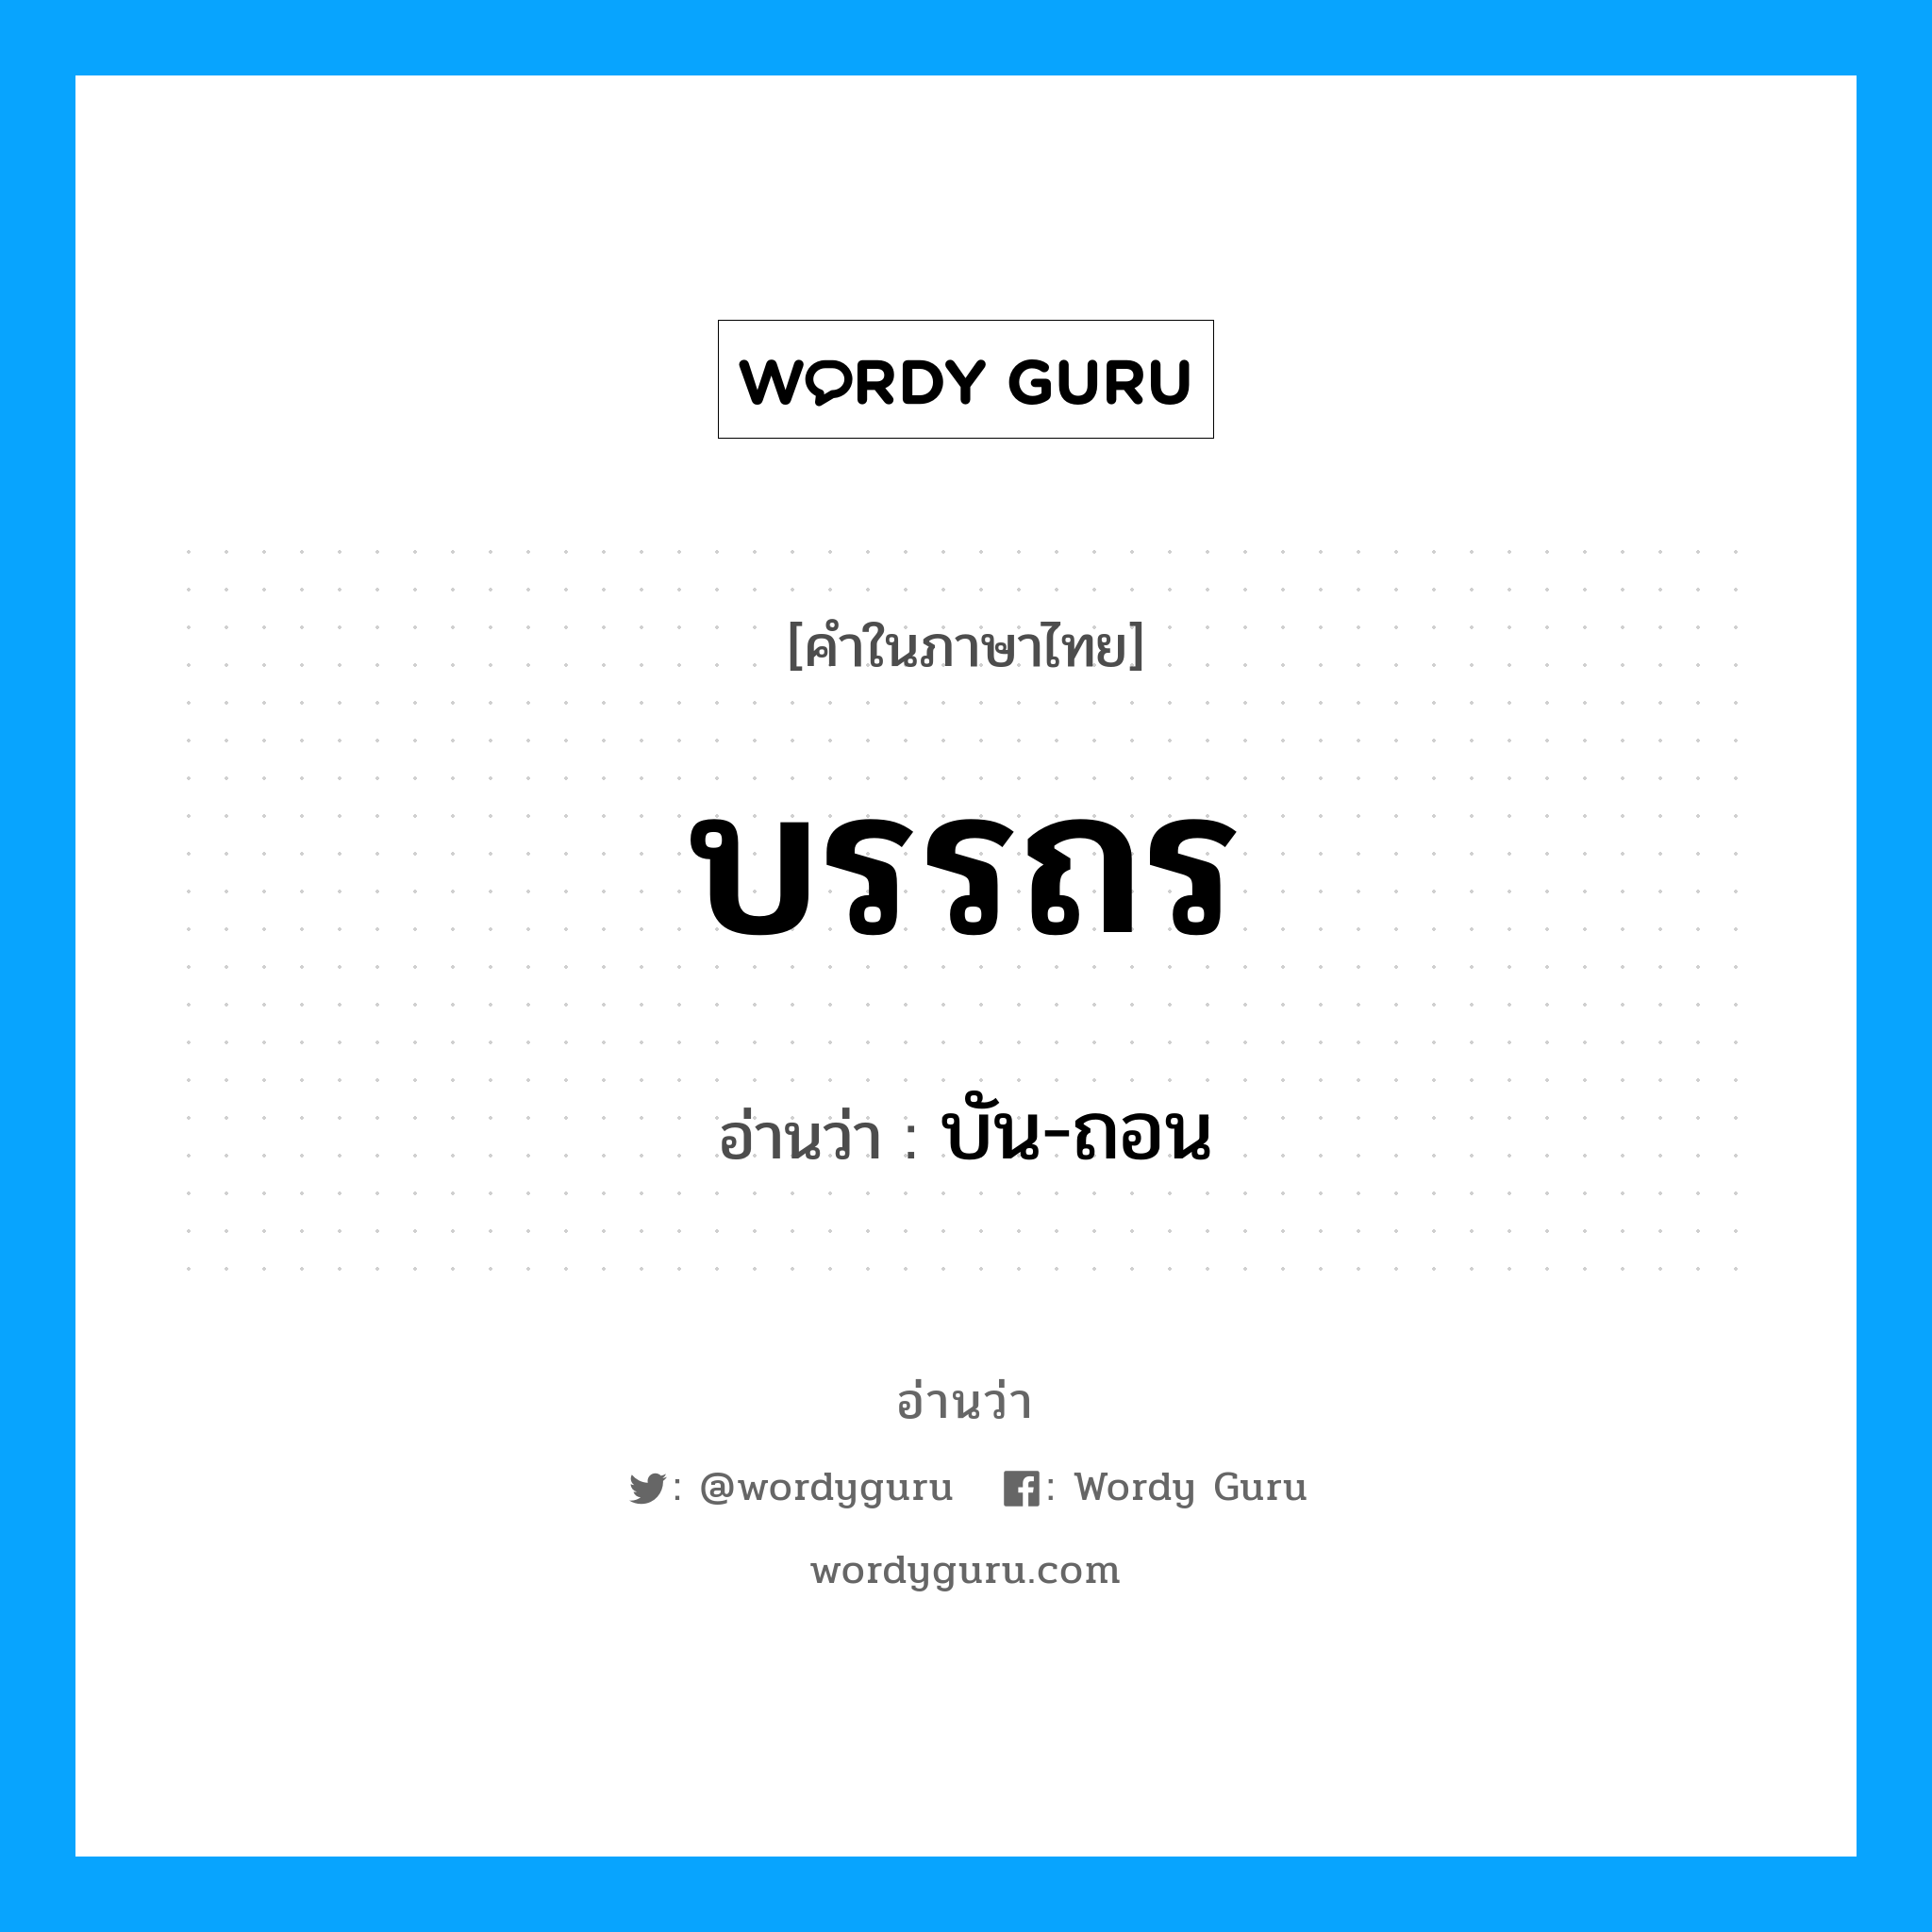 บัน-ถอน เป็นคำอ่านของคำไหน?, คำในภาษาไทย บัน-ถอน อ่านว่า บรรถร